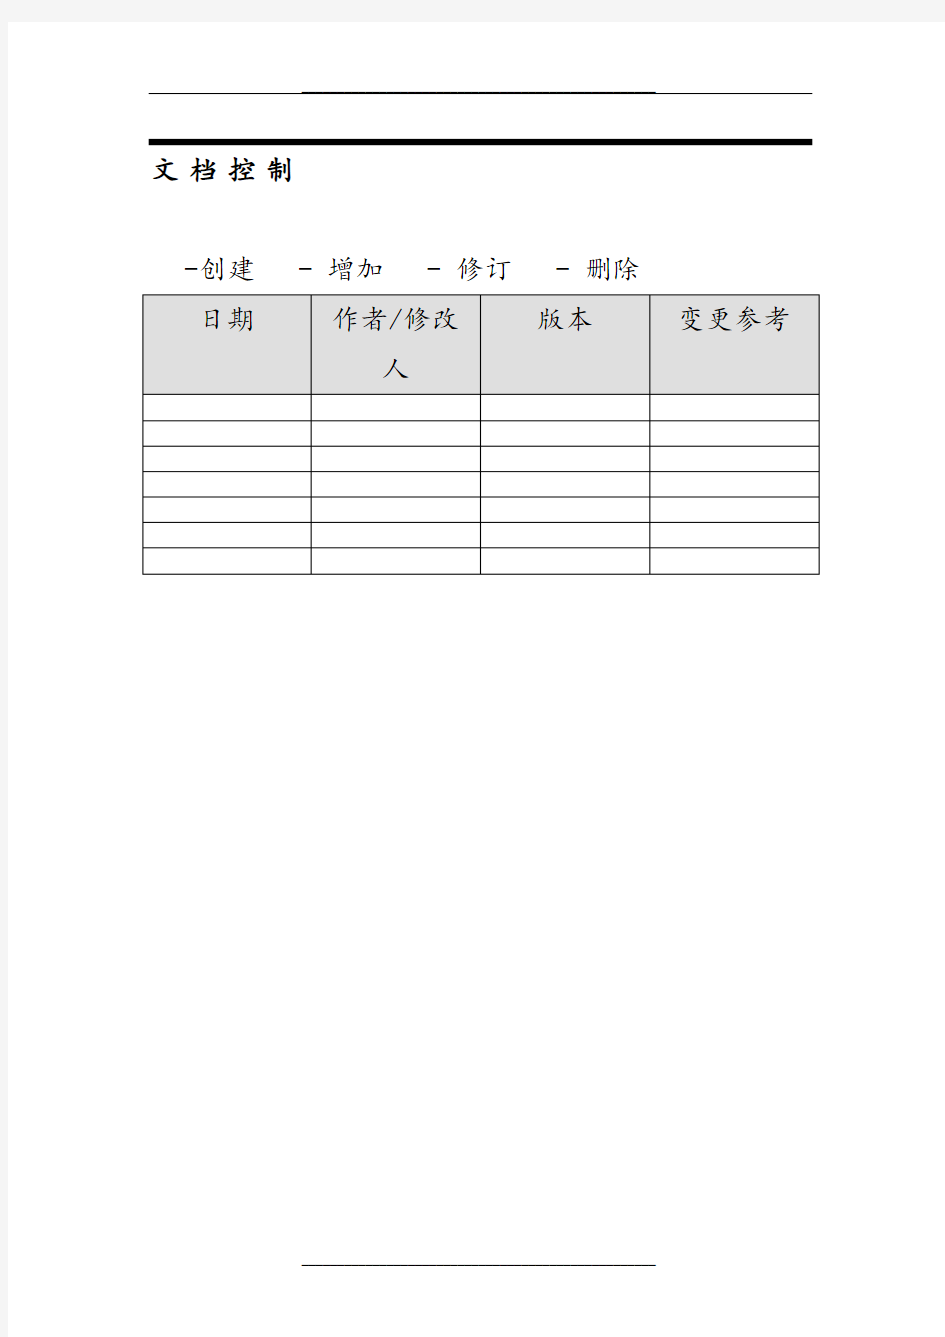 中国联通合作方自服务门户系统操作手册-合作方人员操作V_1.0